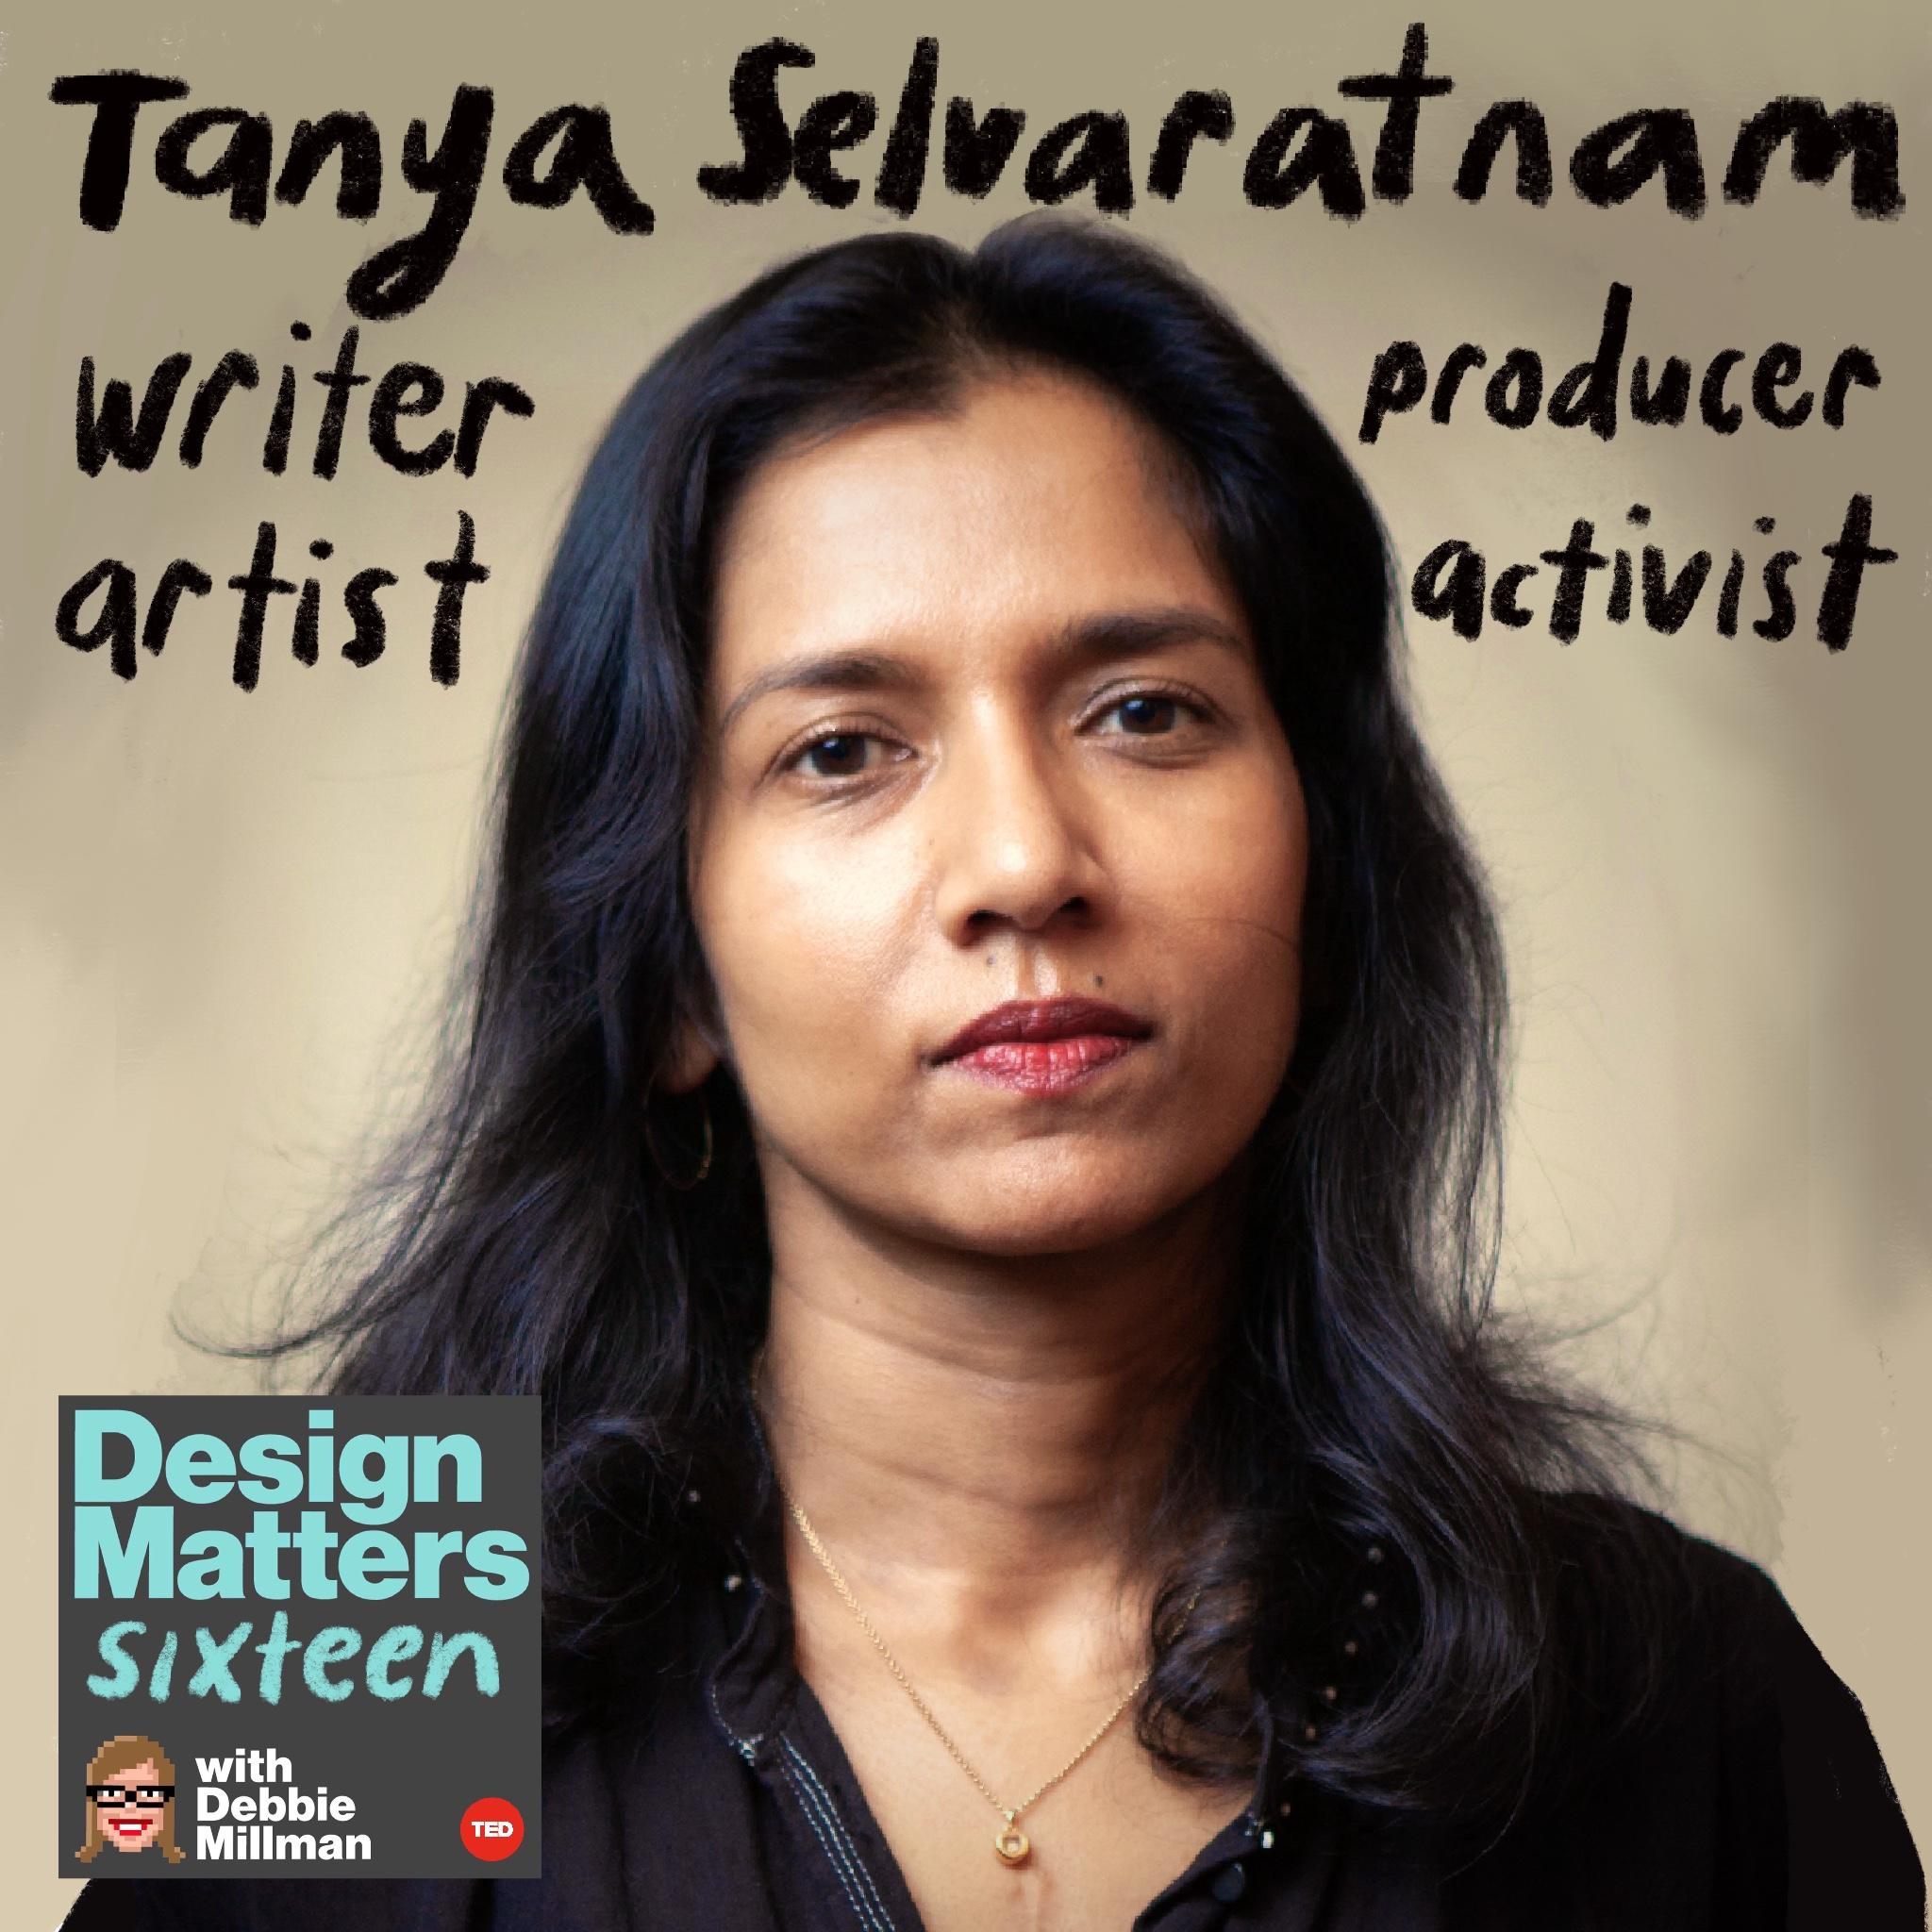 Thumbnail for "Tanya Selvaratnam".